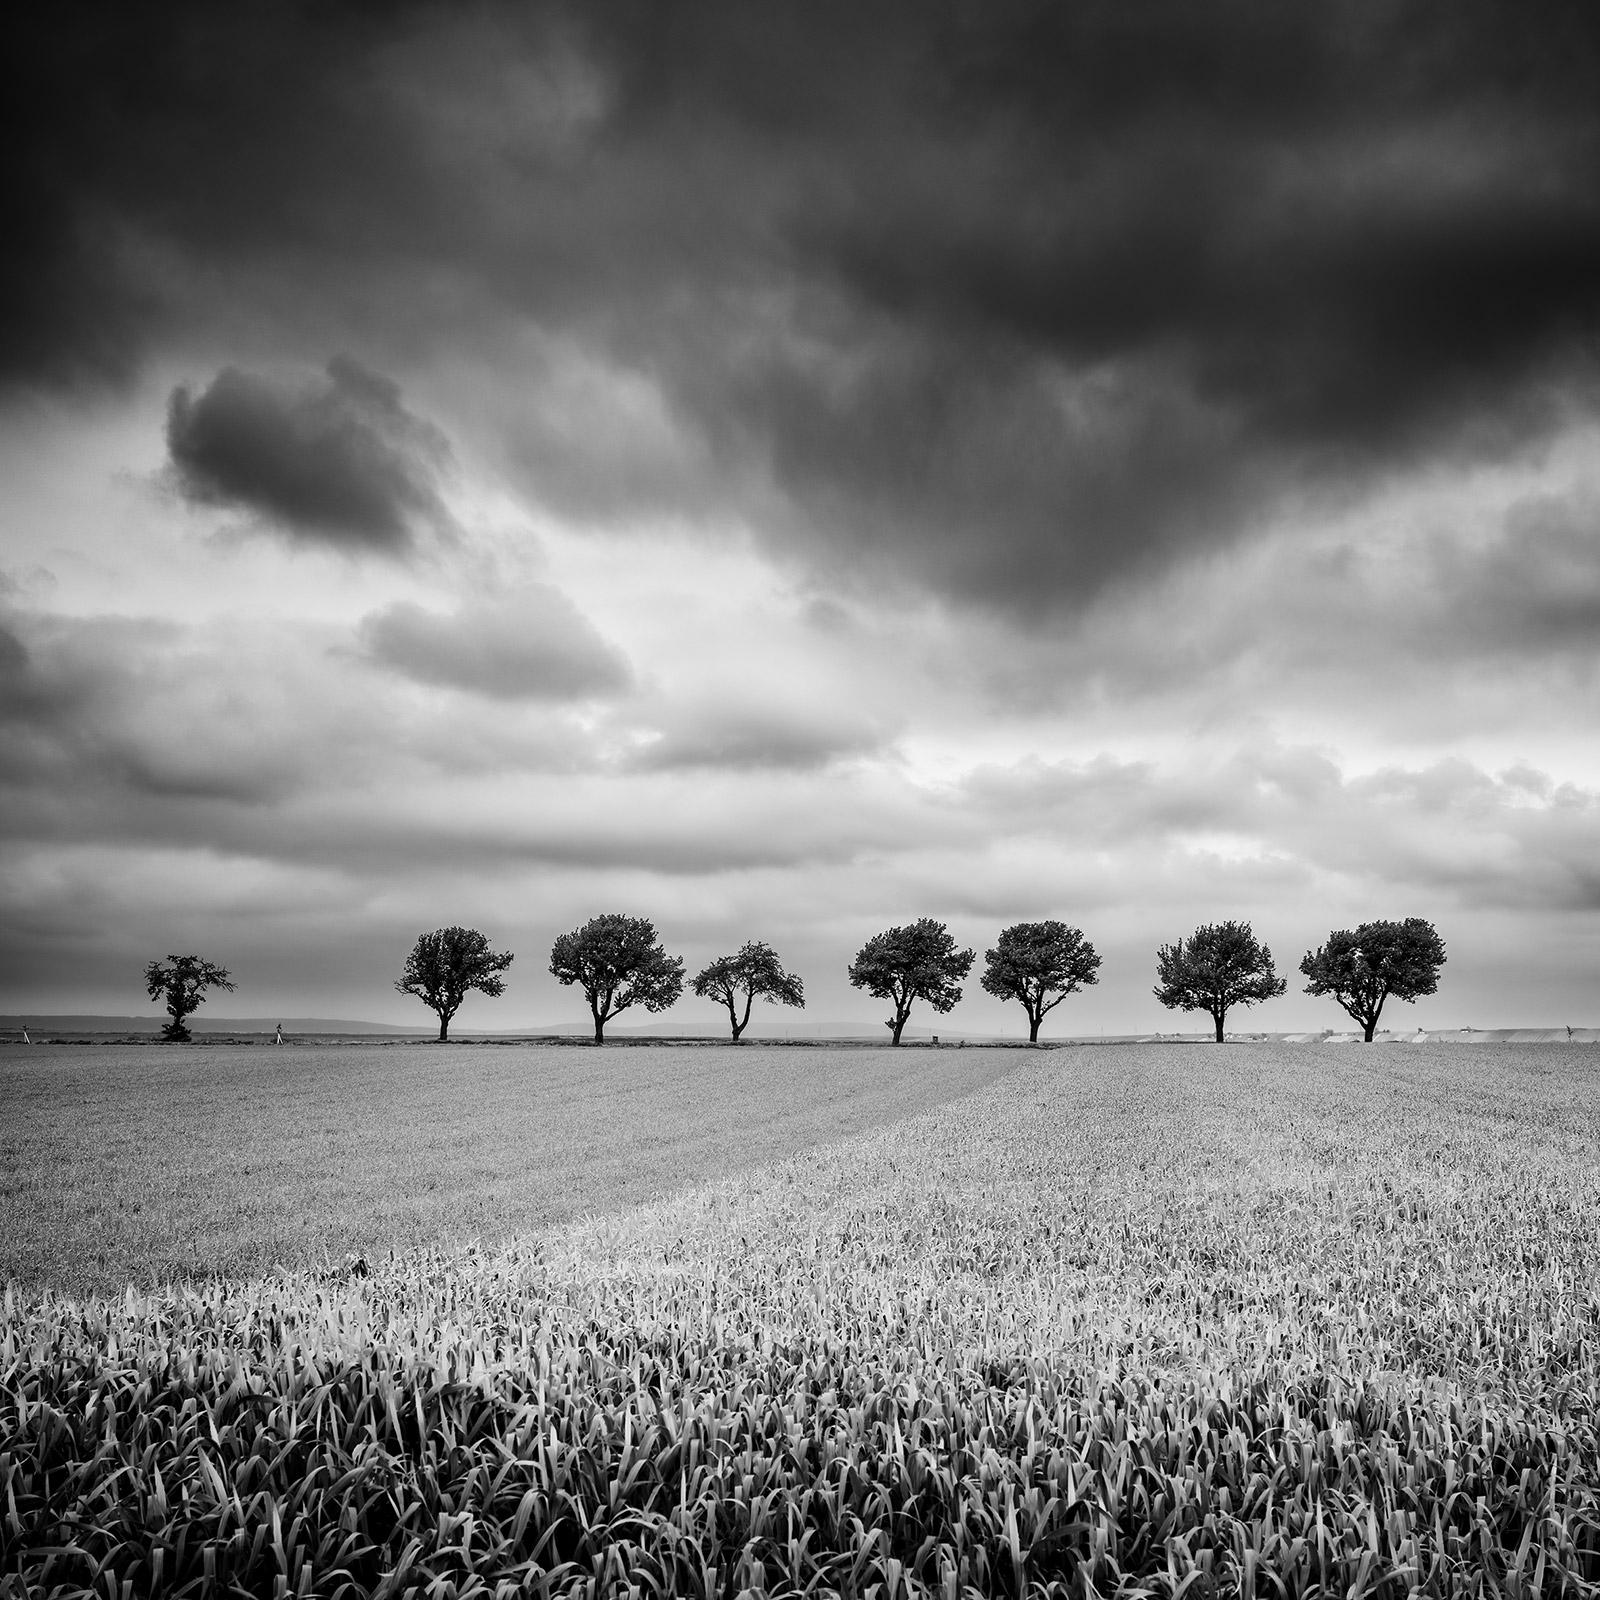 Zehn Kirschbaumbäume, stürmische Wolken, Schwarz-Weiß, Landschaft, Kunstfotografie